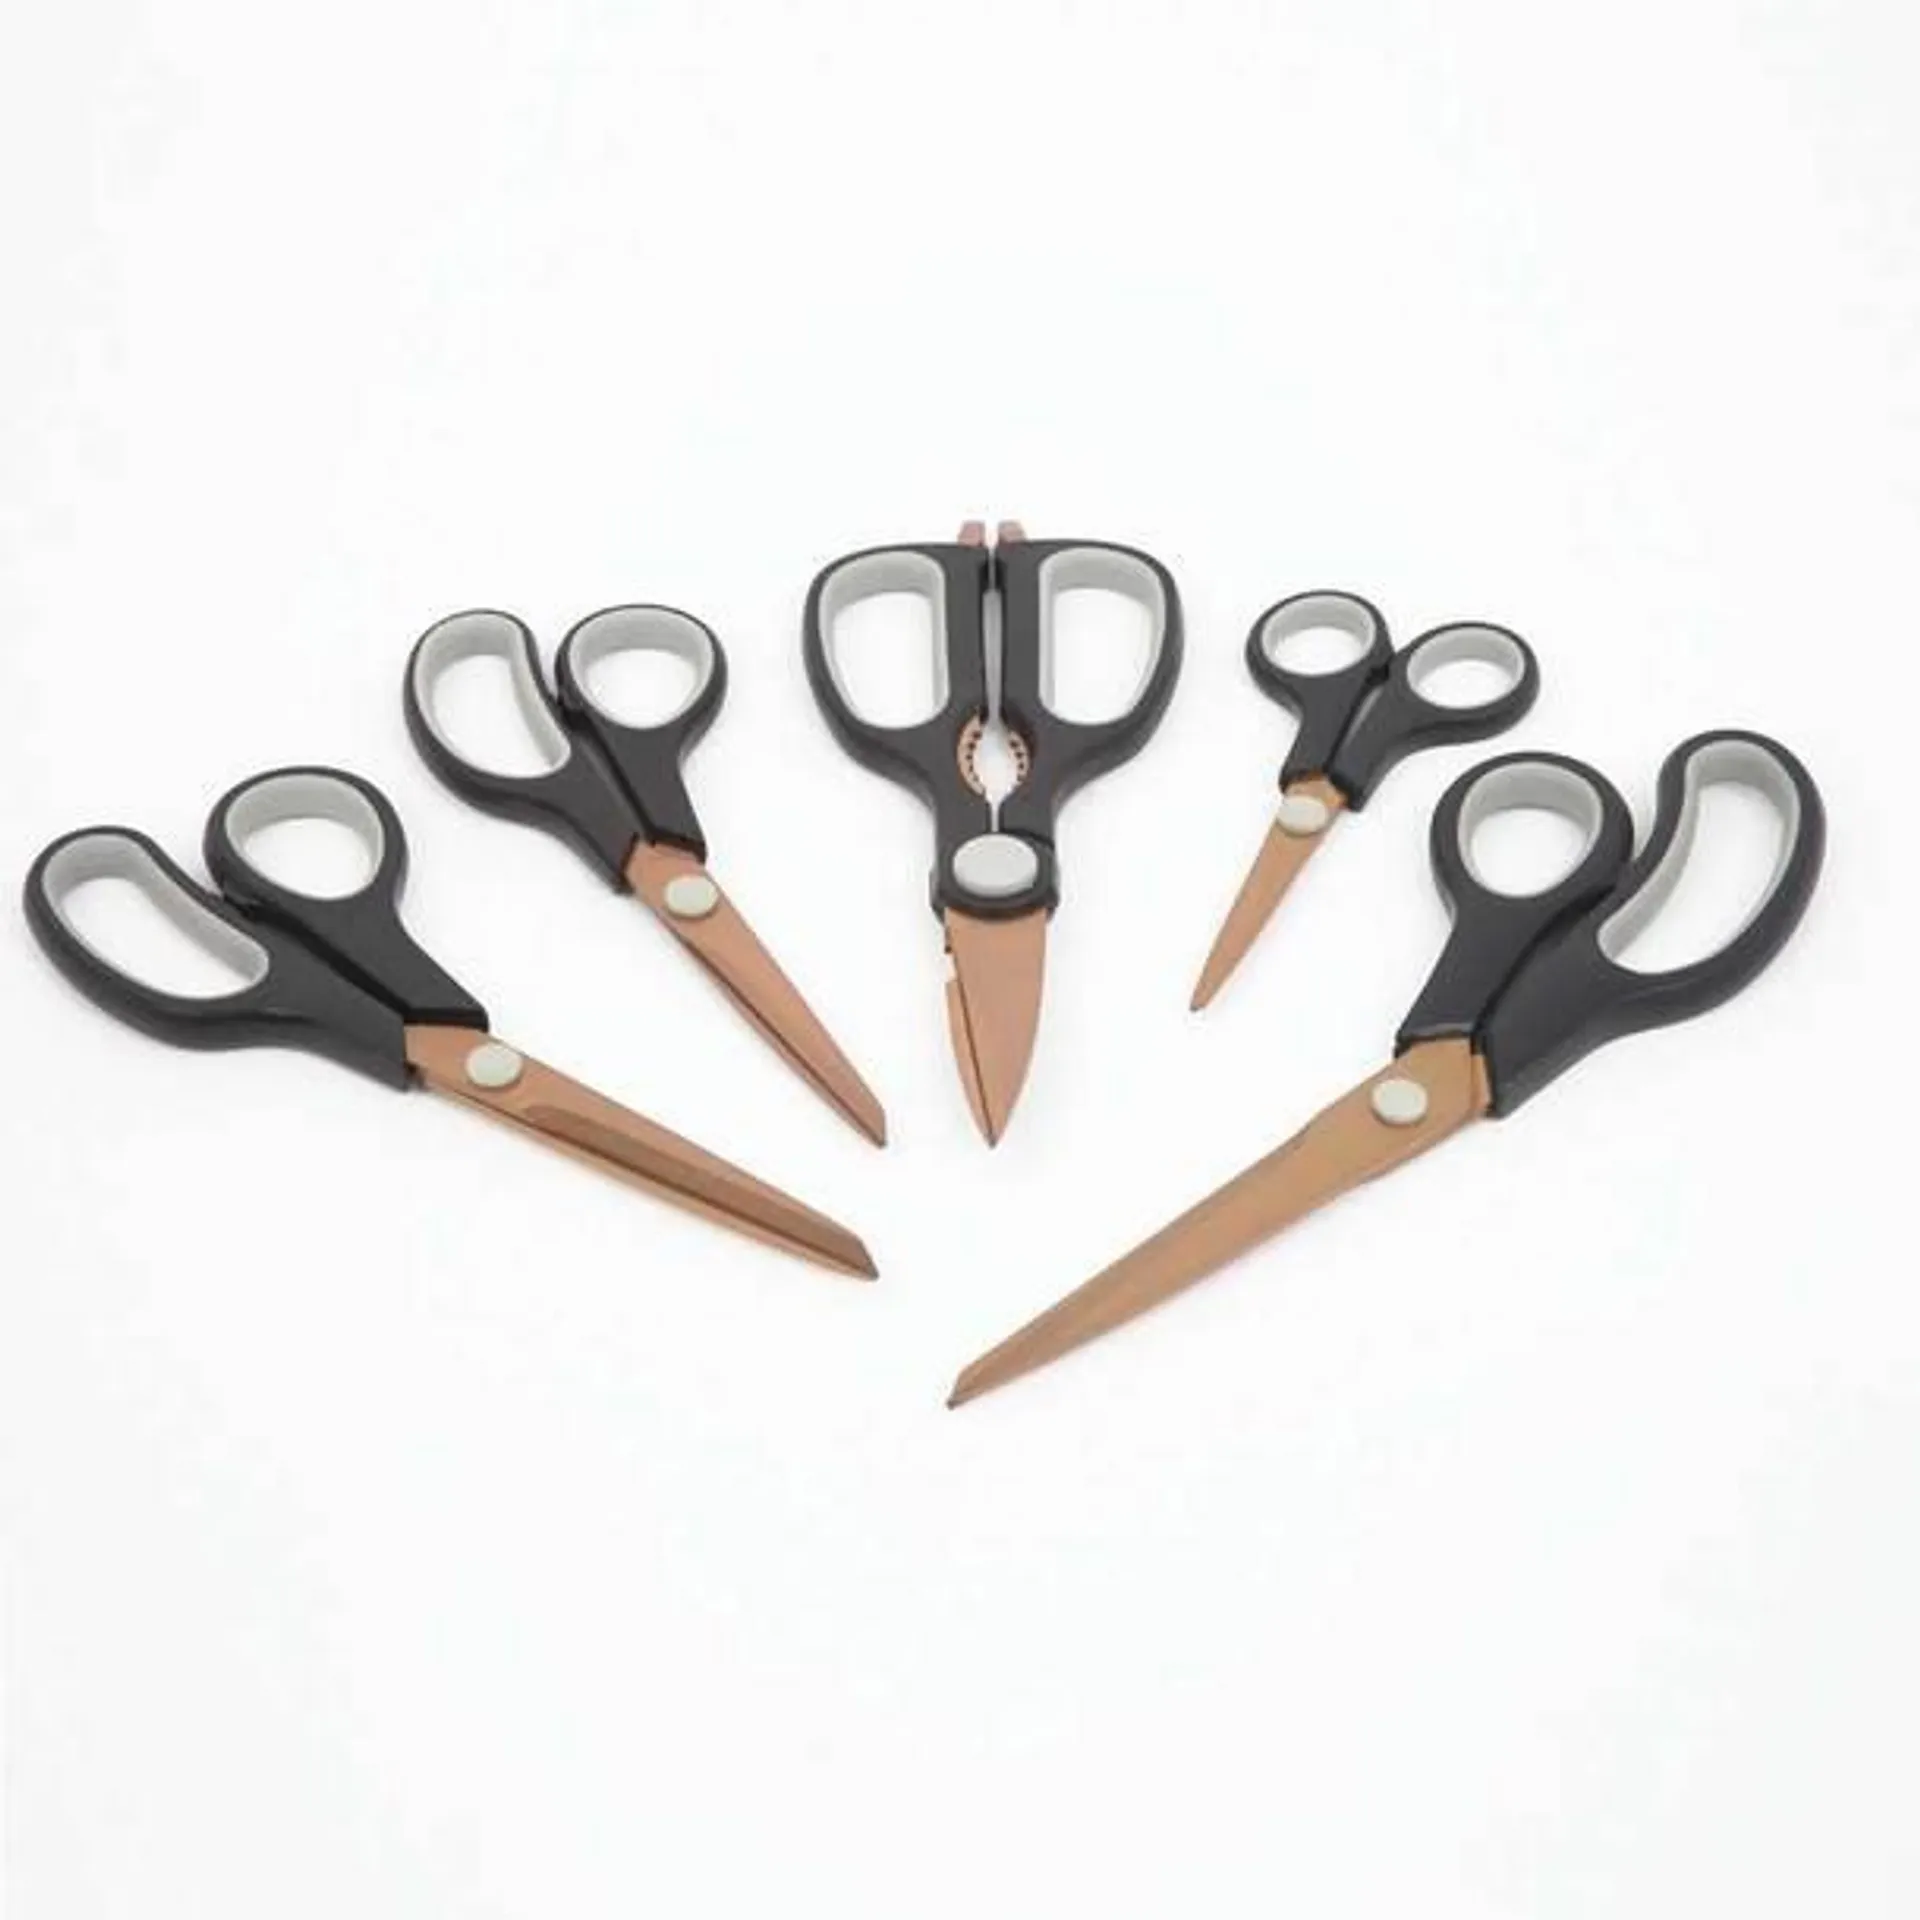 Titanium Scissors (5-piece Set)